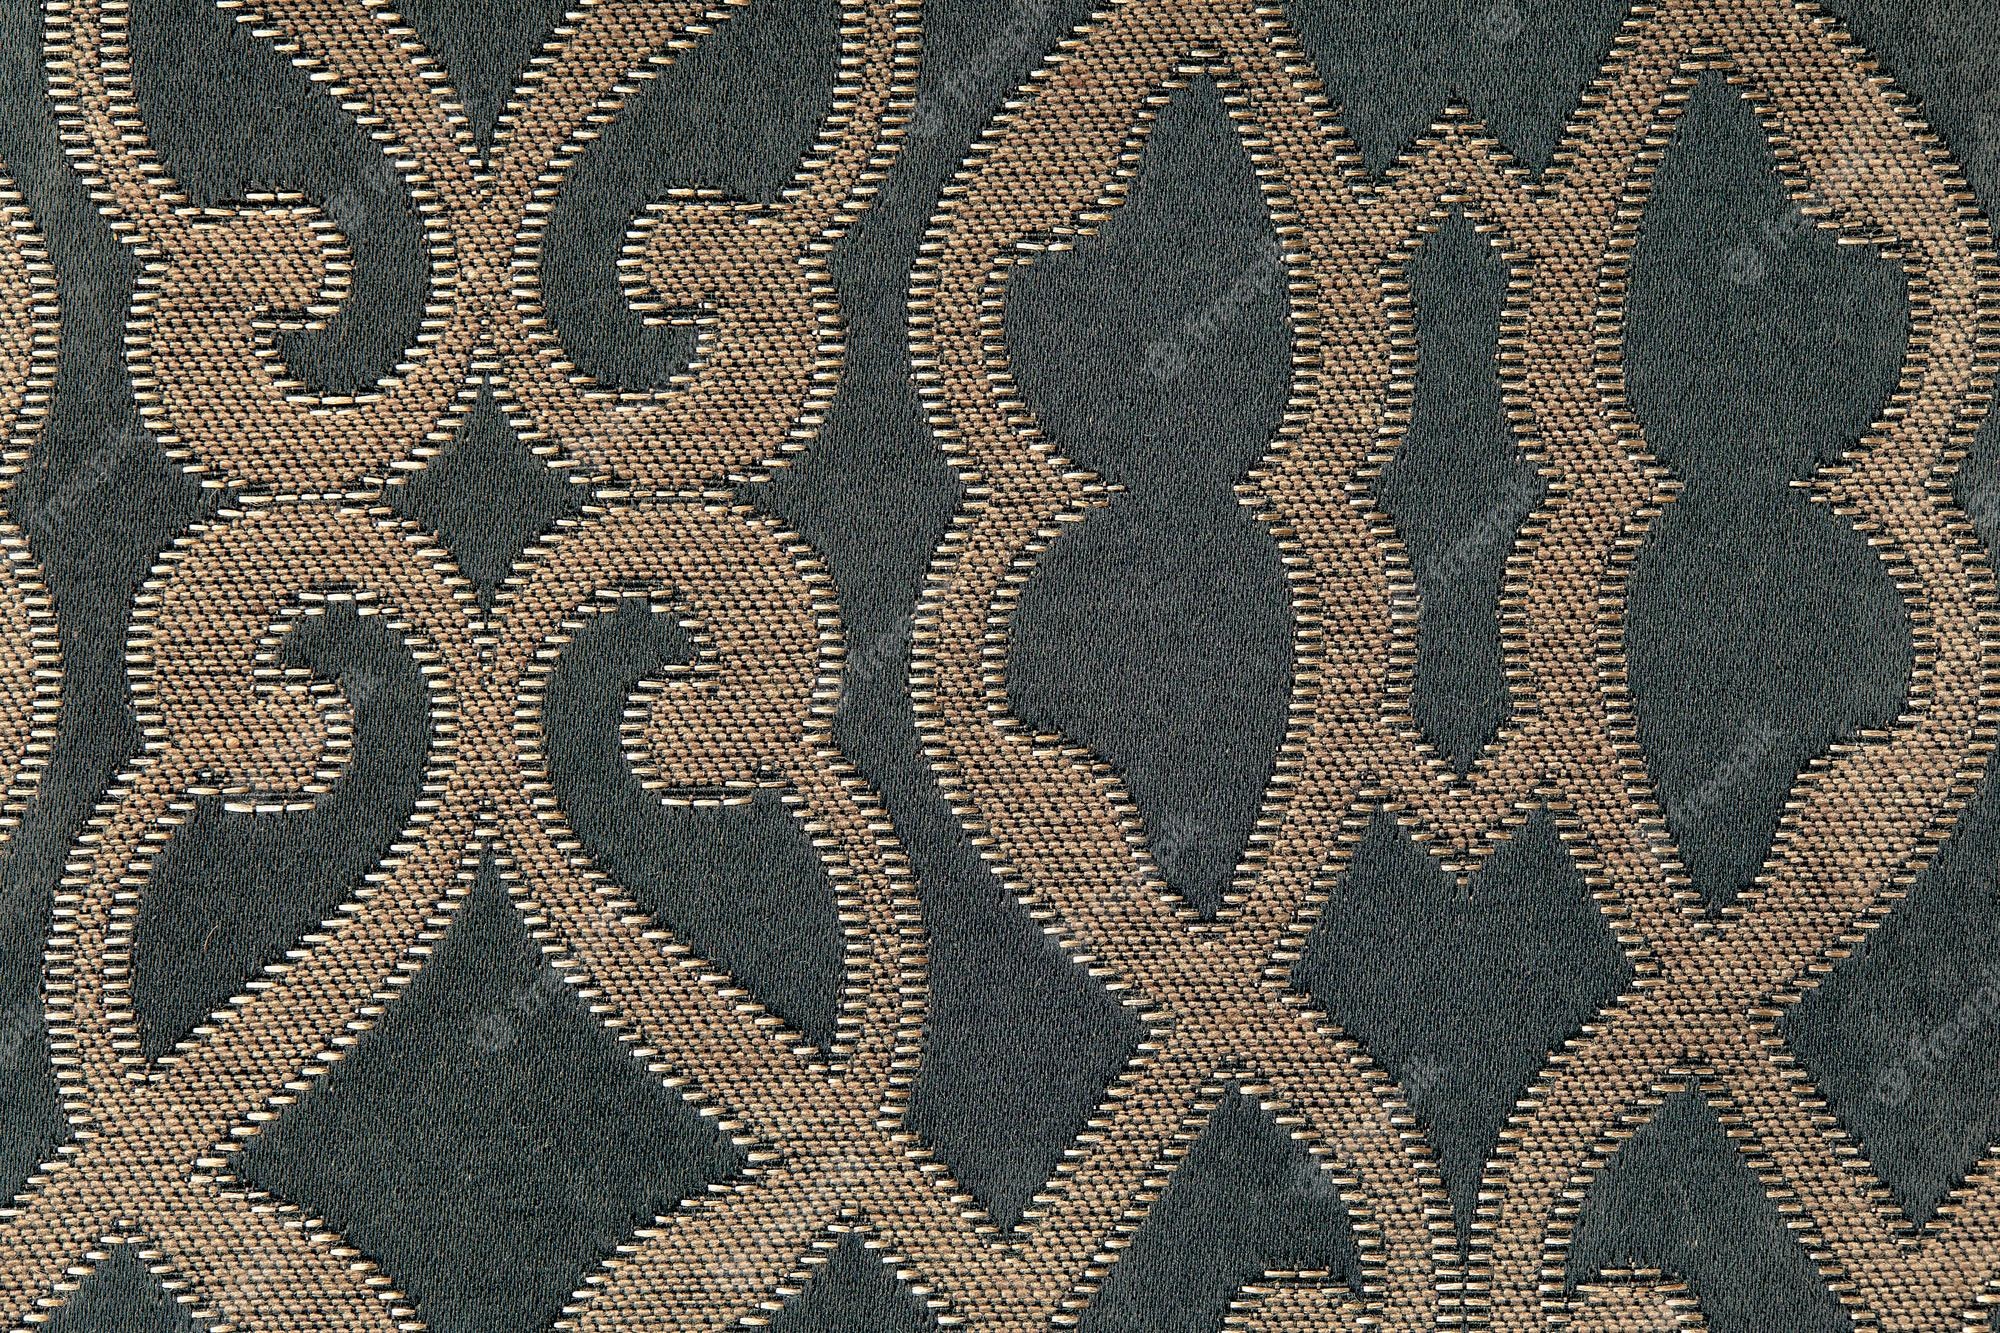 Carpet design images